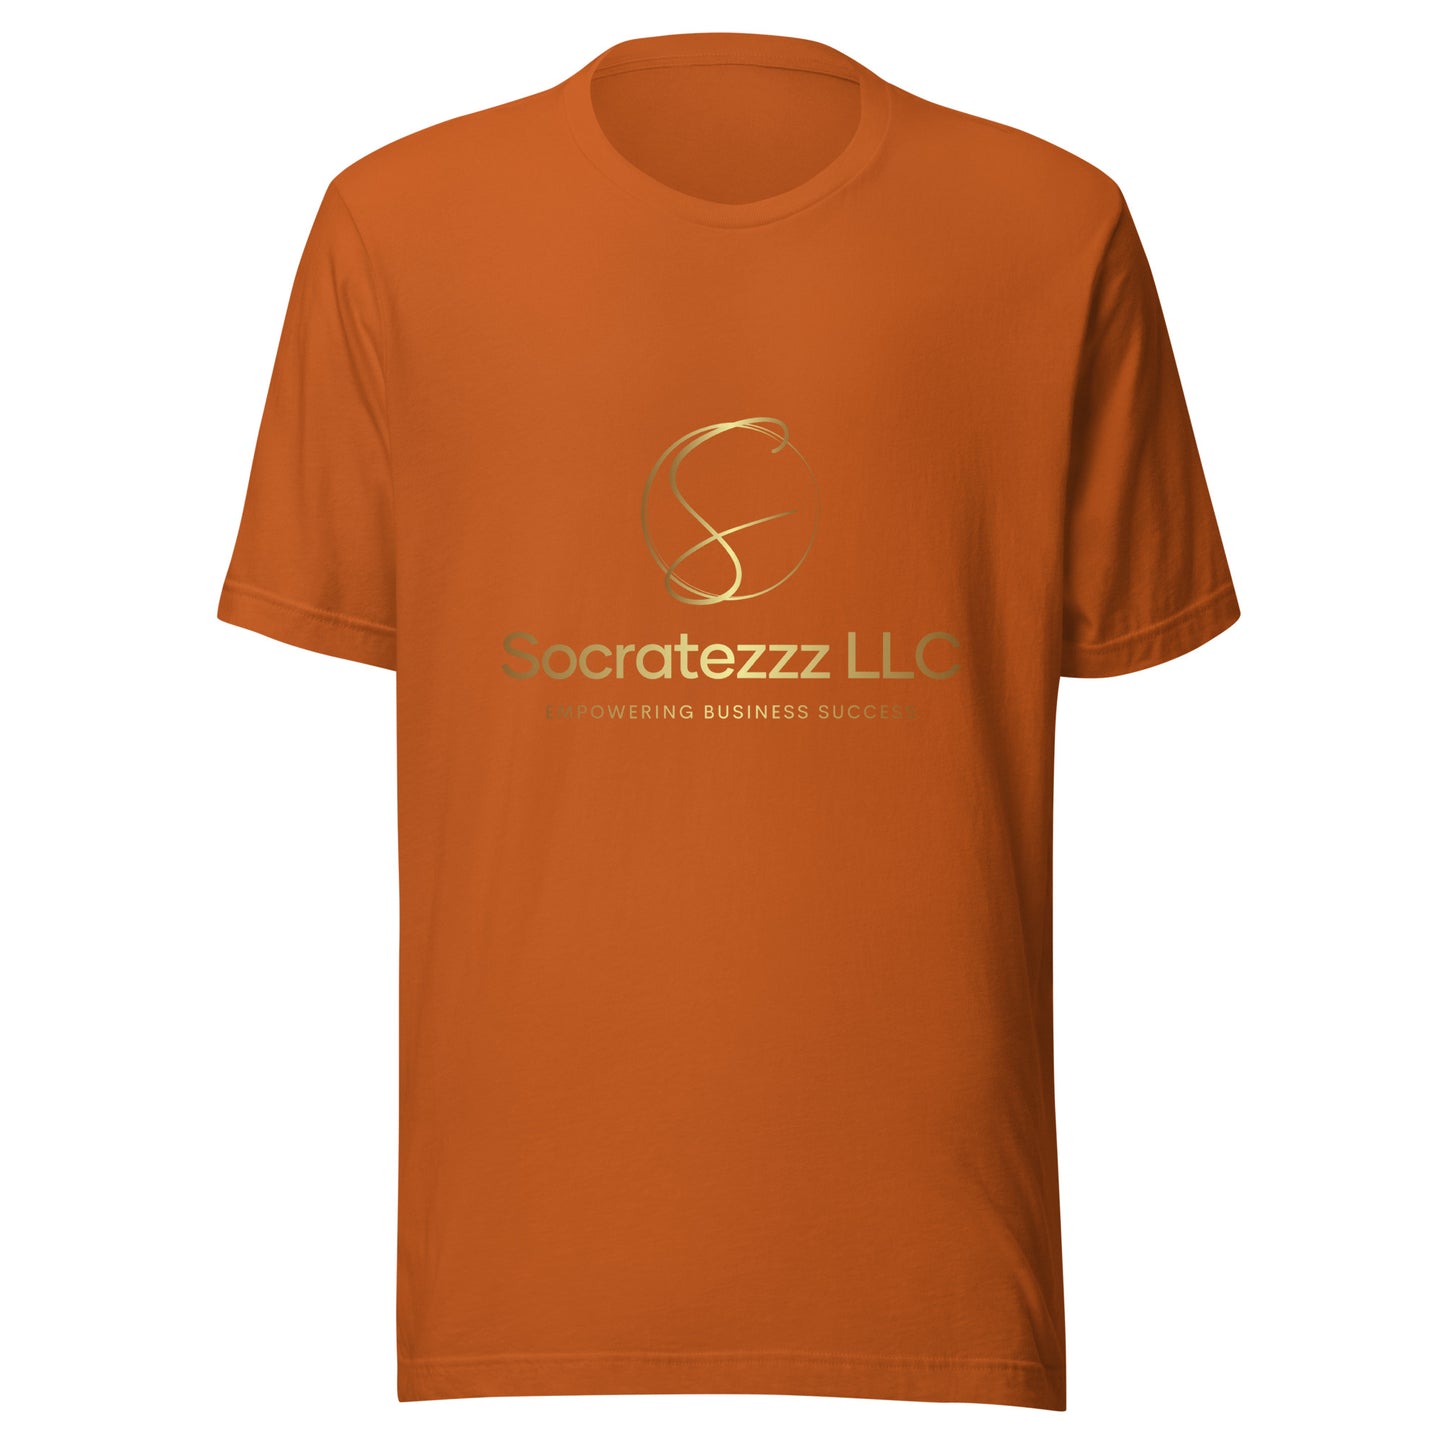 Socratezzz Official Brand - Unisex t-shirt